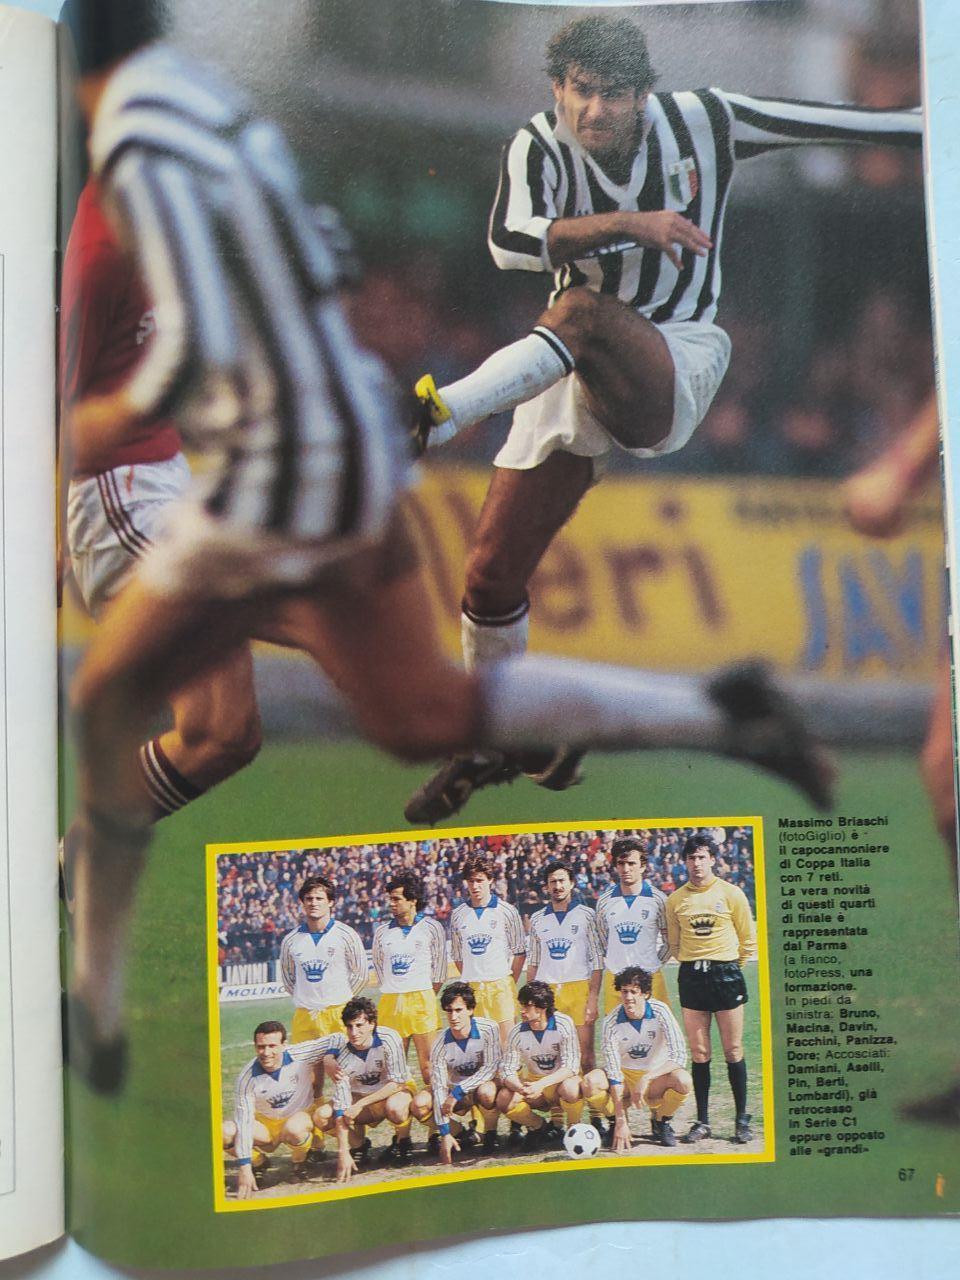 Журнал Гуэрин спортиво Guerin Sportivo 23 - 1985 Эйзельская трагедия 29.05.1985 5